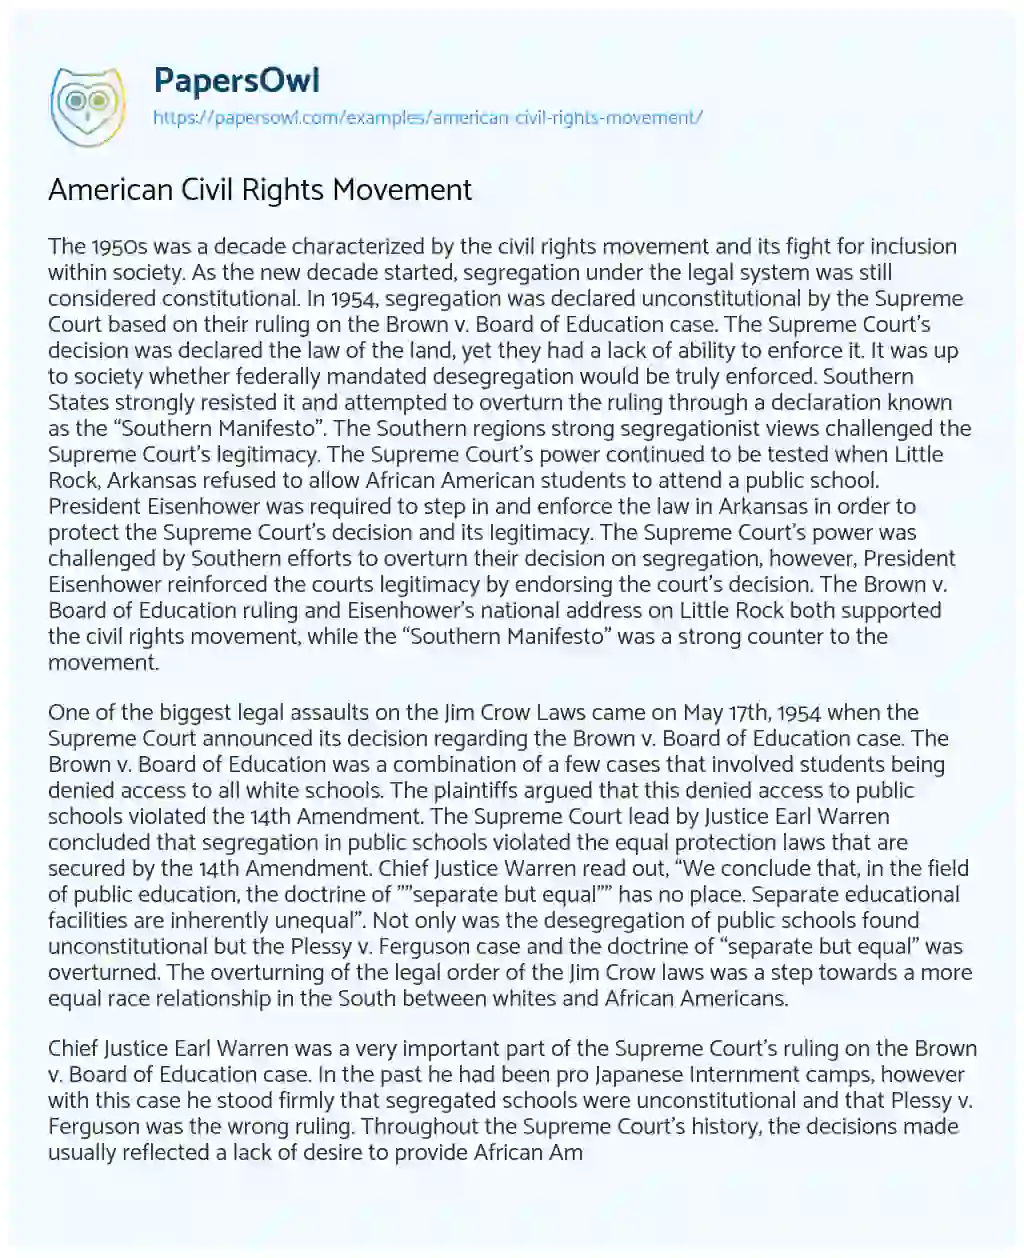 American Civil Rights Movement essay